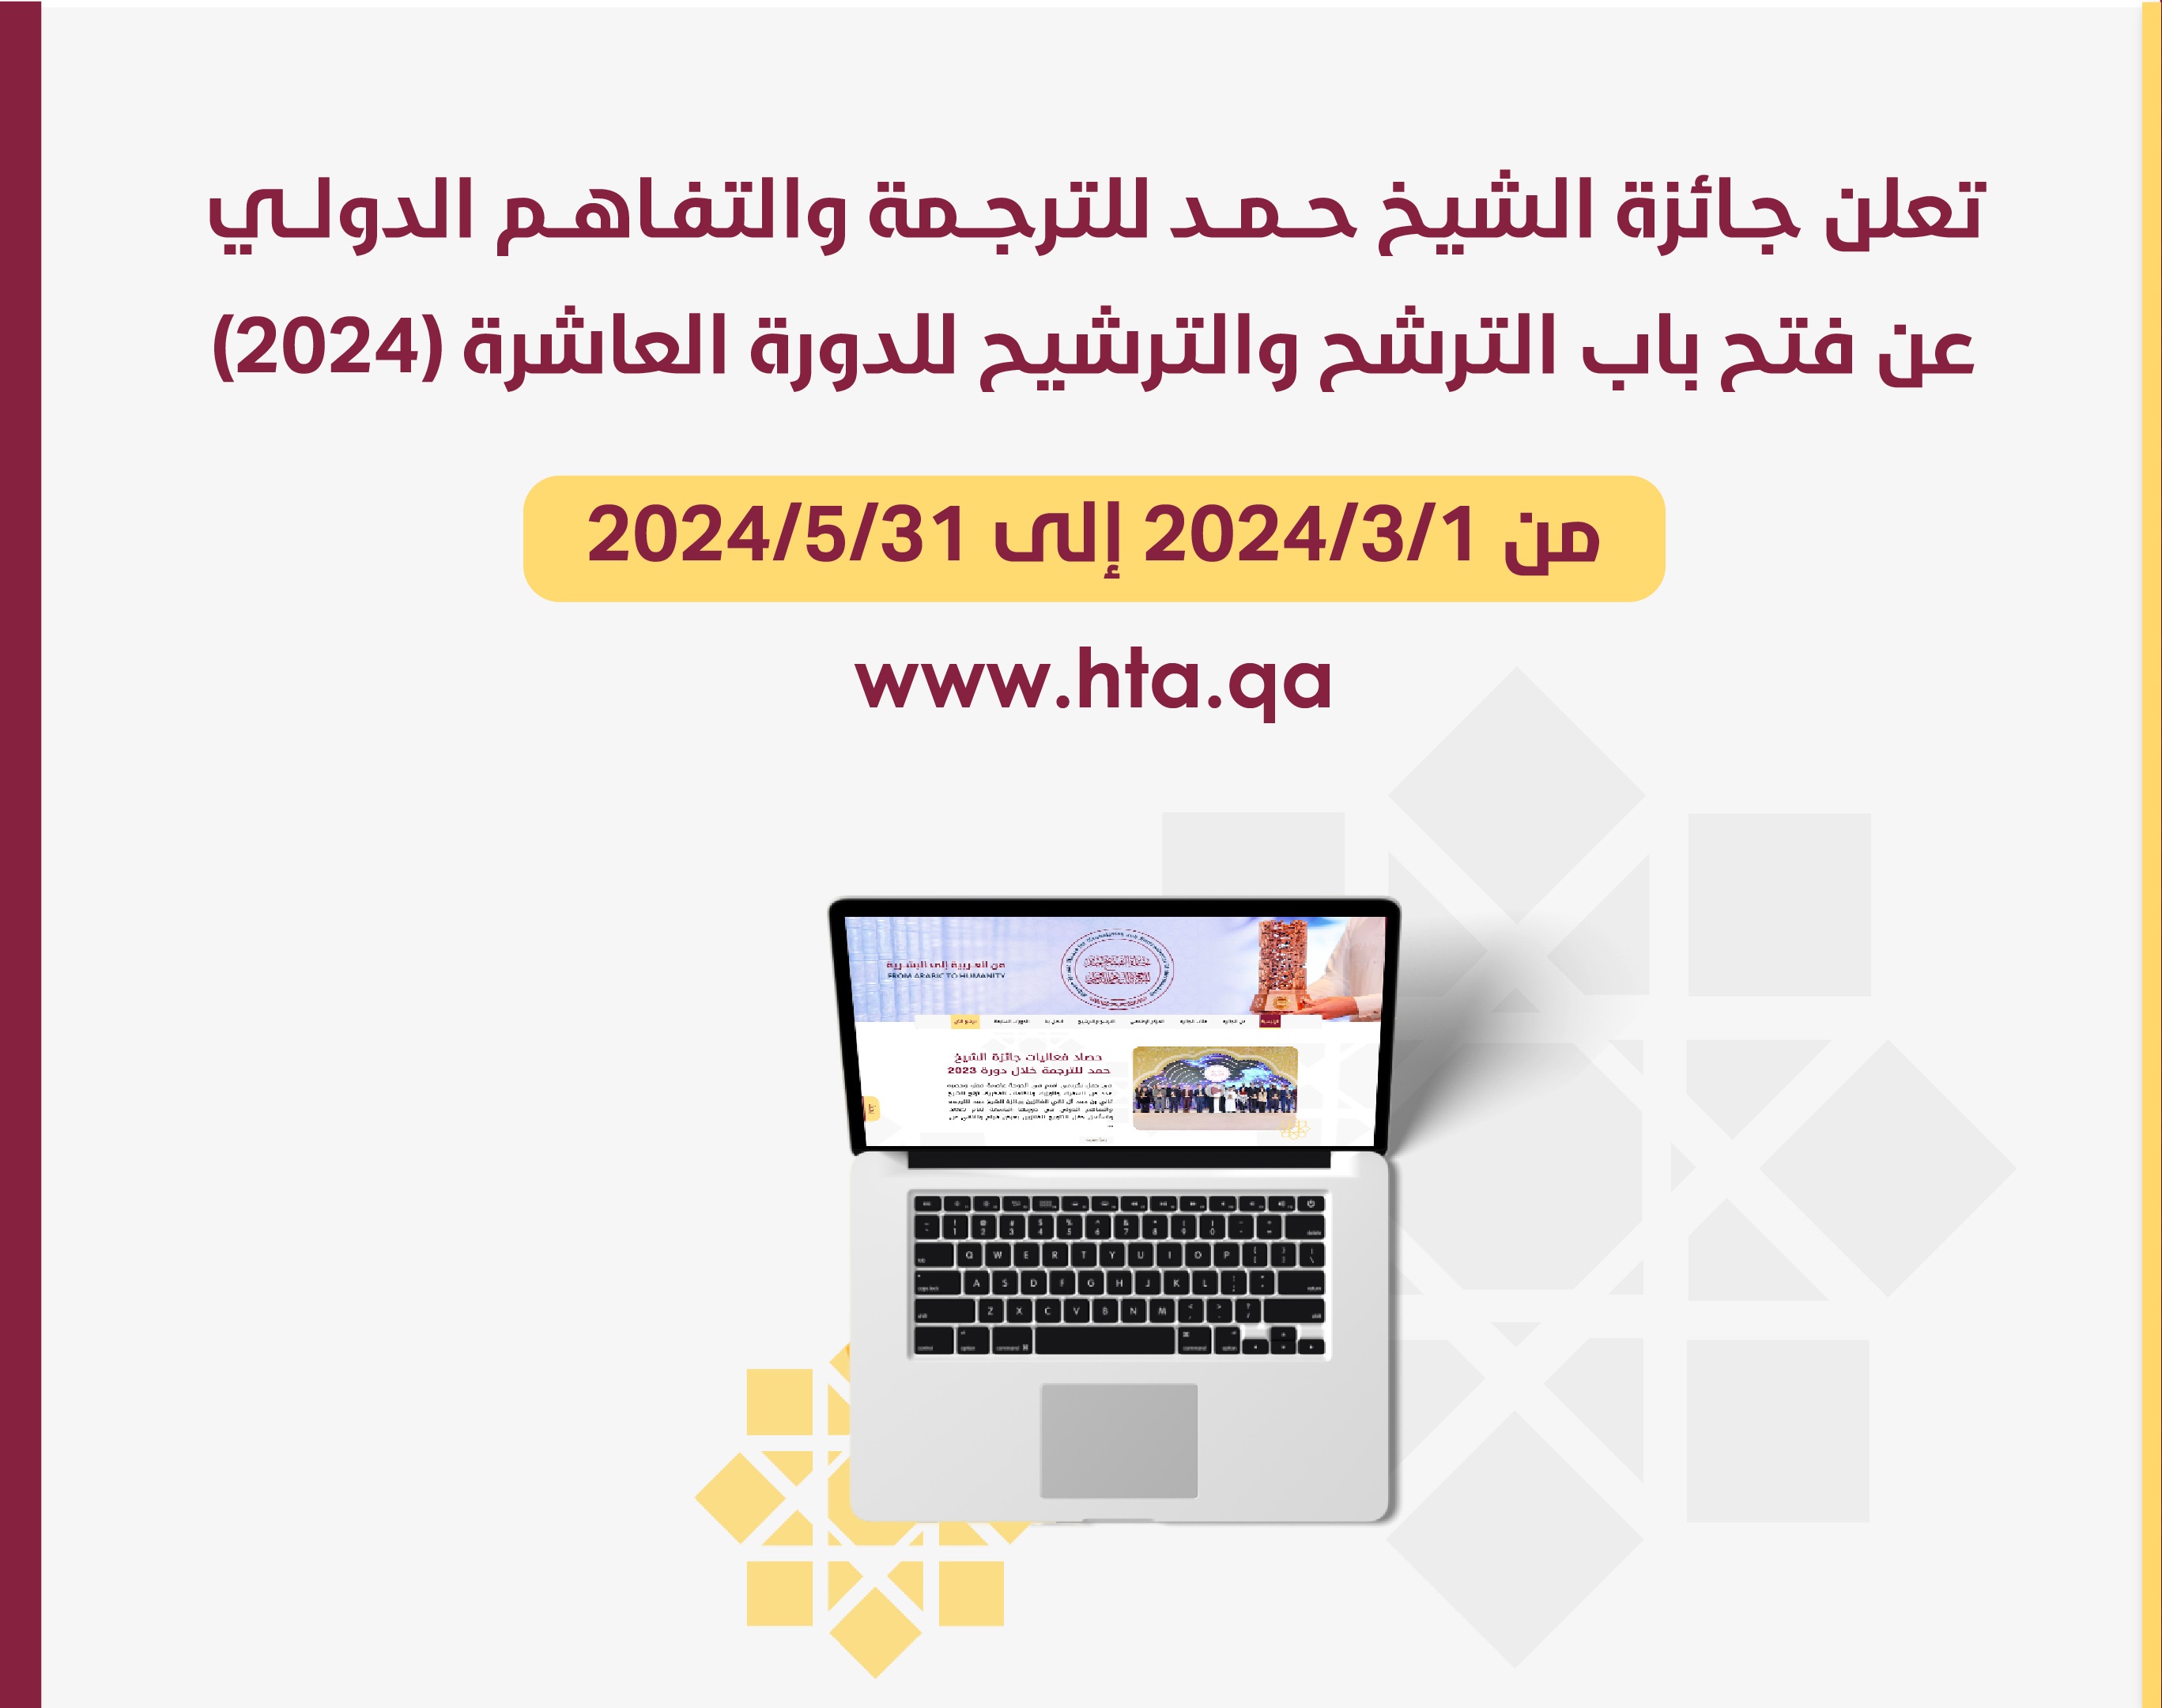 الإعلان عن اللغات المعتمدة  لدورة 2024 وتاريخ فترة الترشح والترشيح